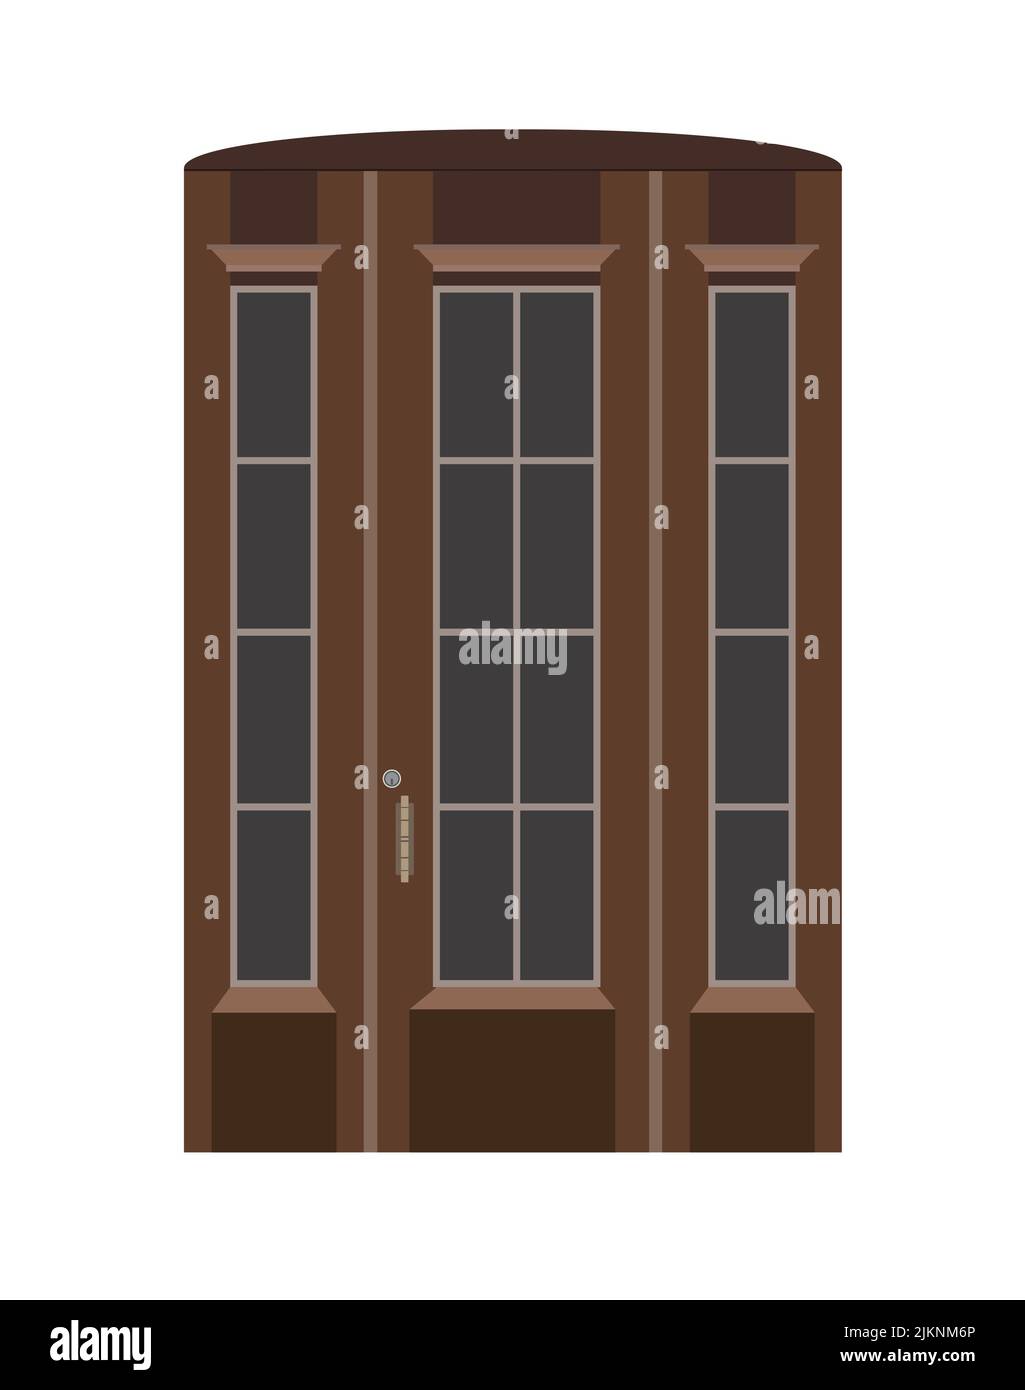 Portail d'entrée en bois marron avec fenêtres en verre. Entrée de porte avant, style européen. Illustration vectorielle. Illustration de Vecteur